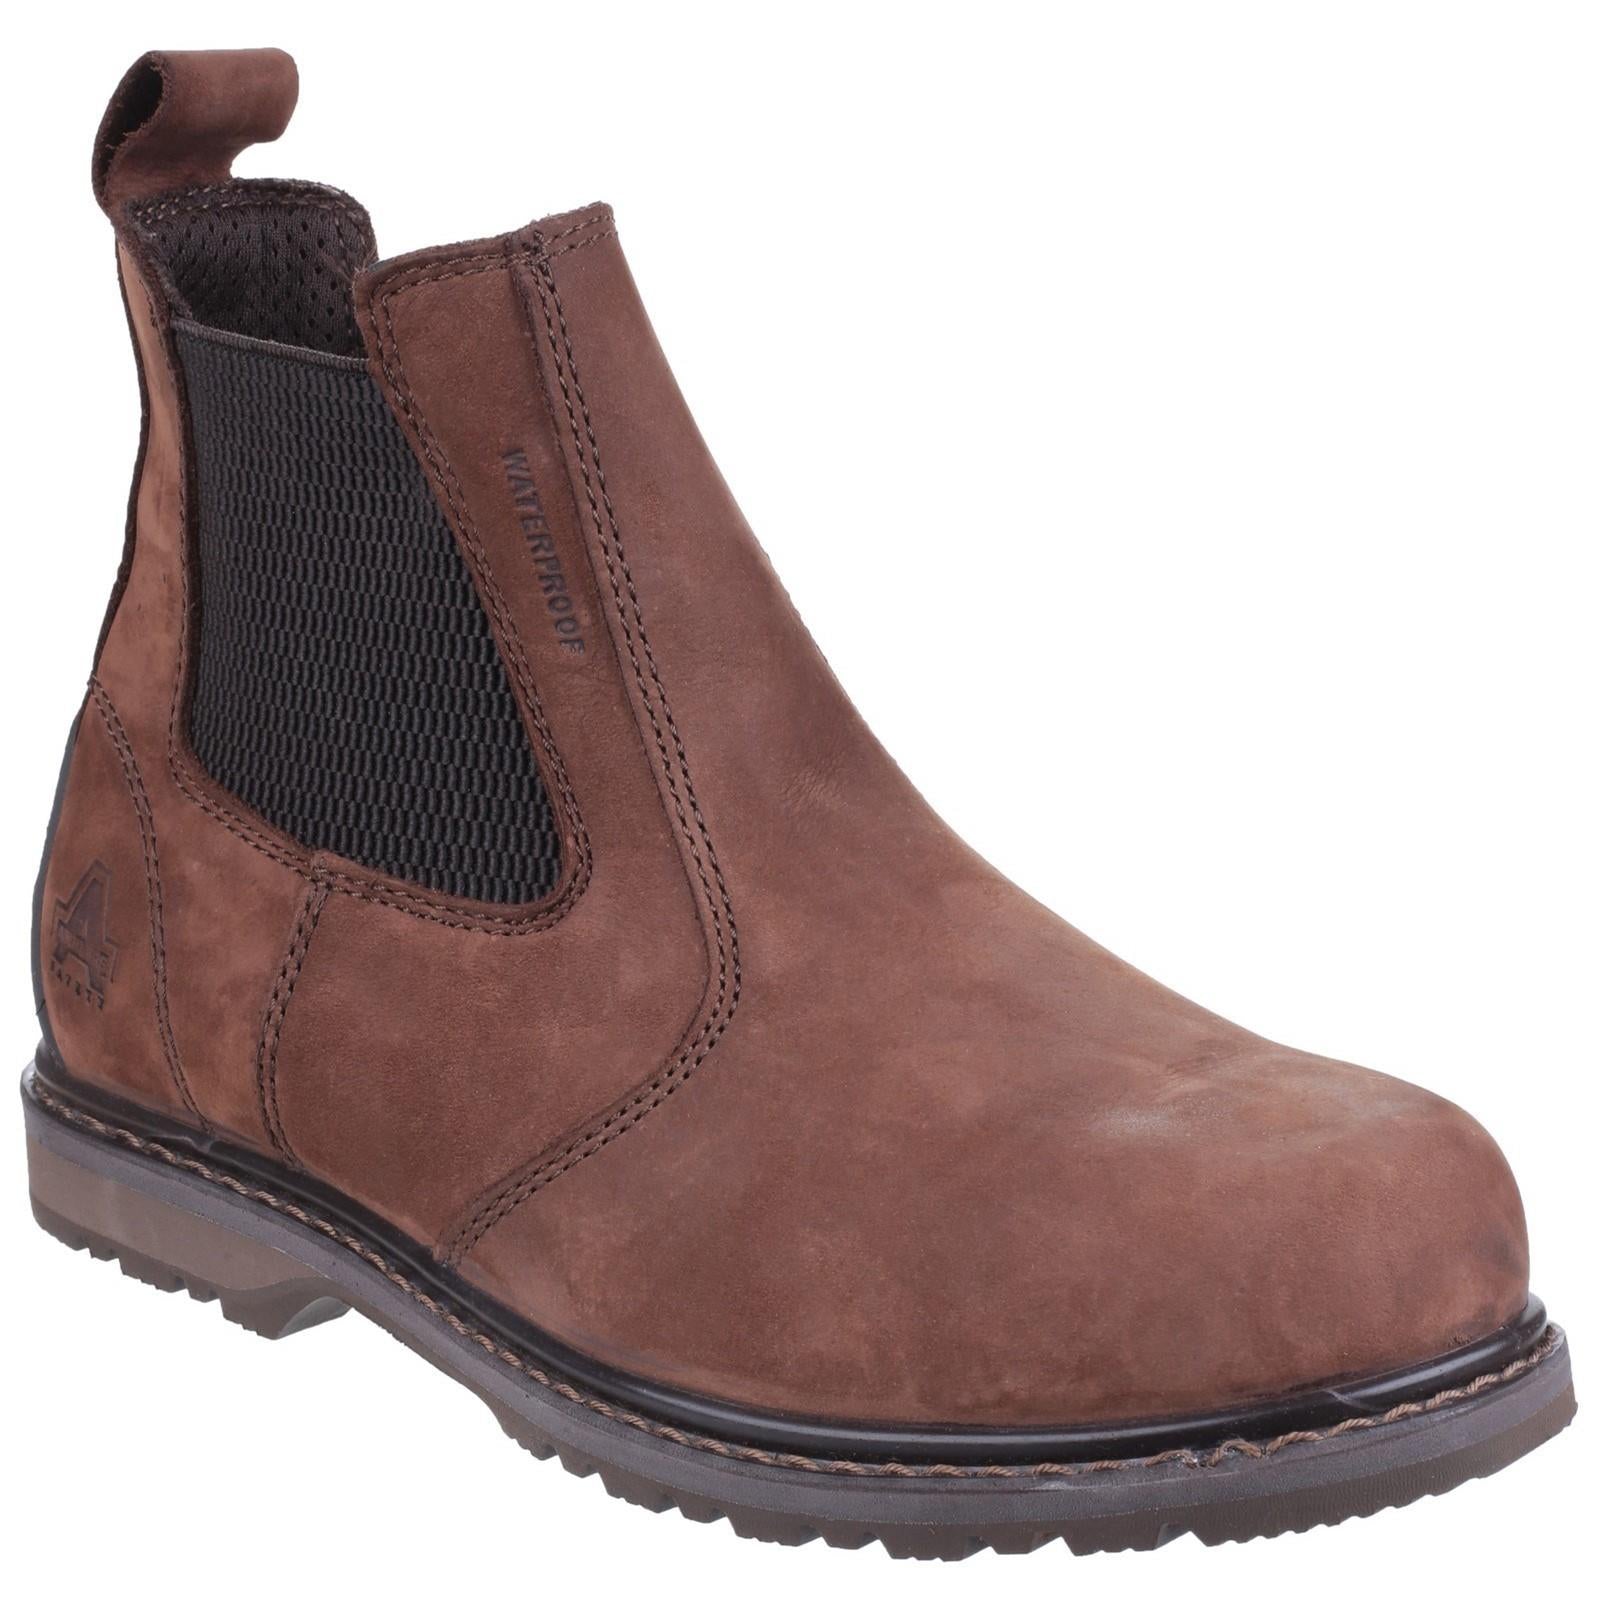 Amblers S3 brown waterproof steel toe-cap/midsole safety dealer boot #AS148